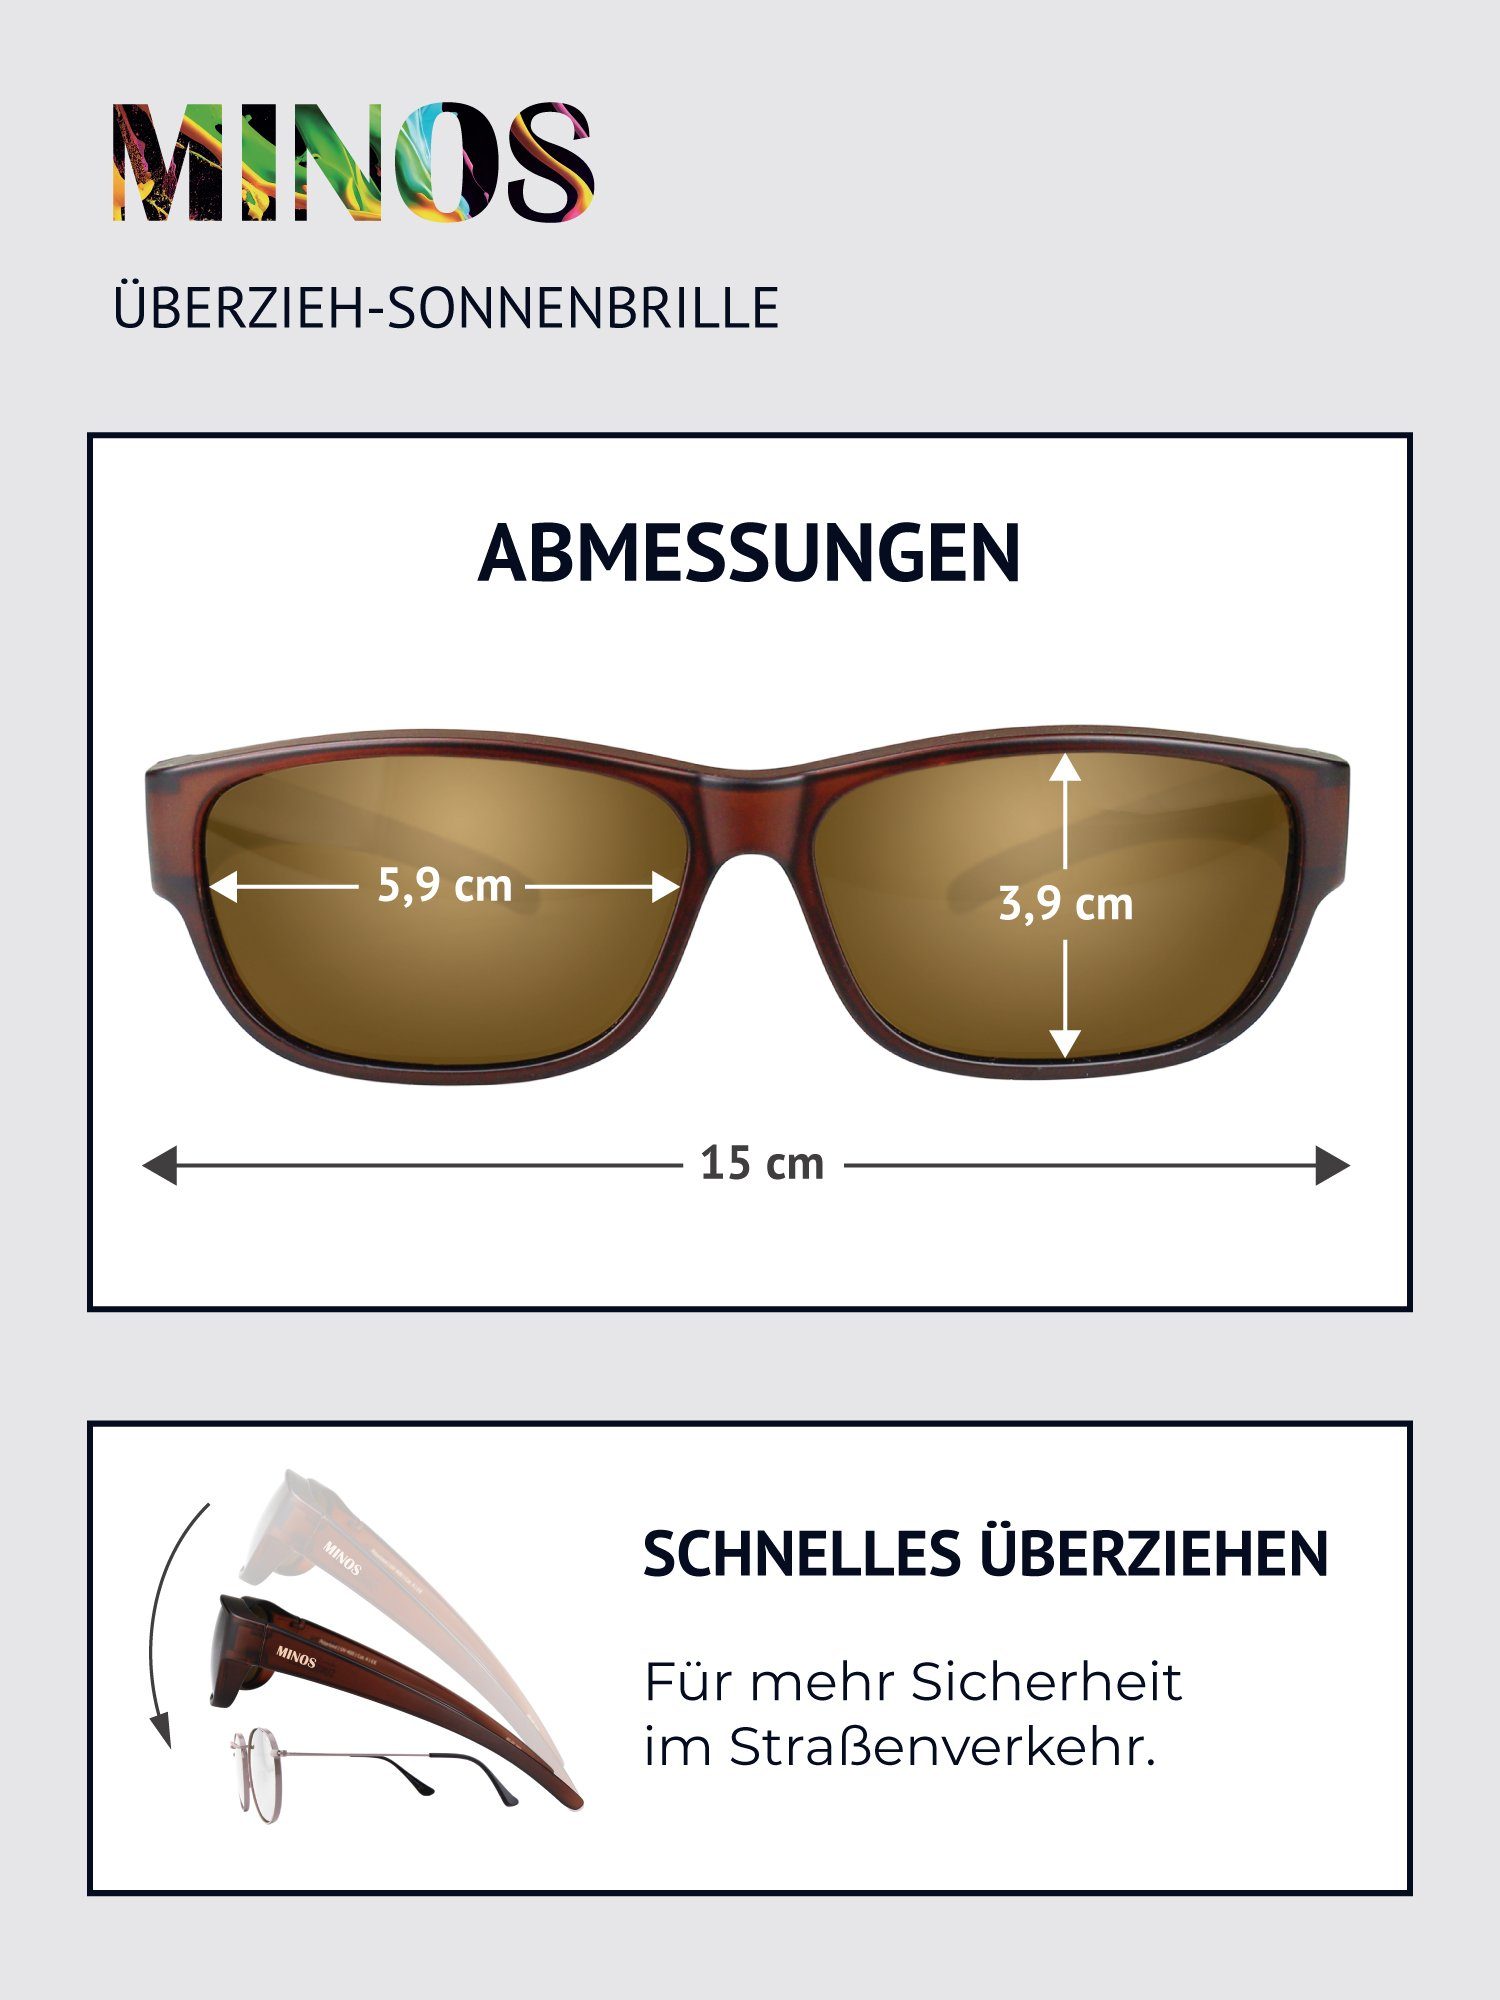 braun Minos (inklusive Sonnenbrille und ActiveSol Schiebebox Überziehsonnenbrille SUNGLASSES Brillenputztuch)